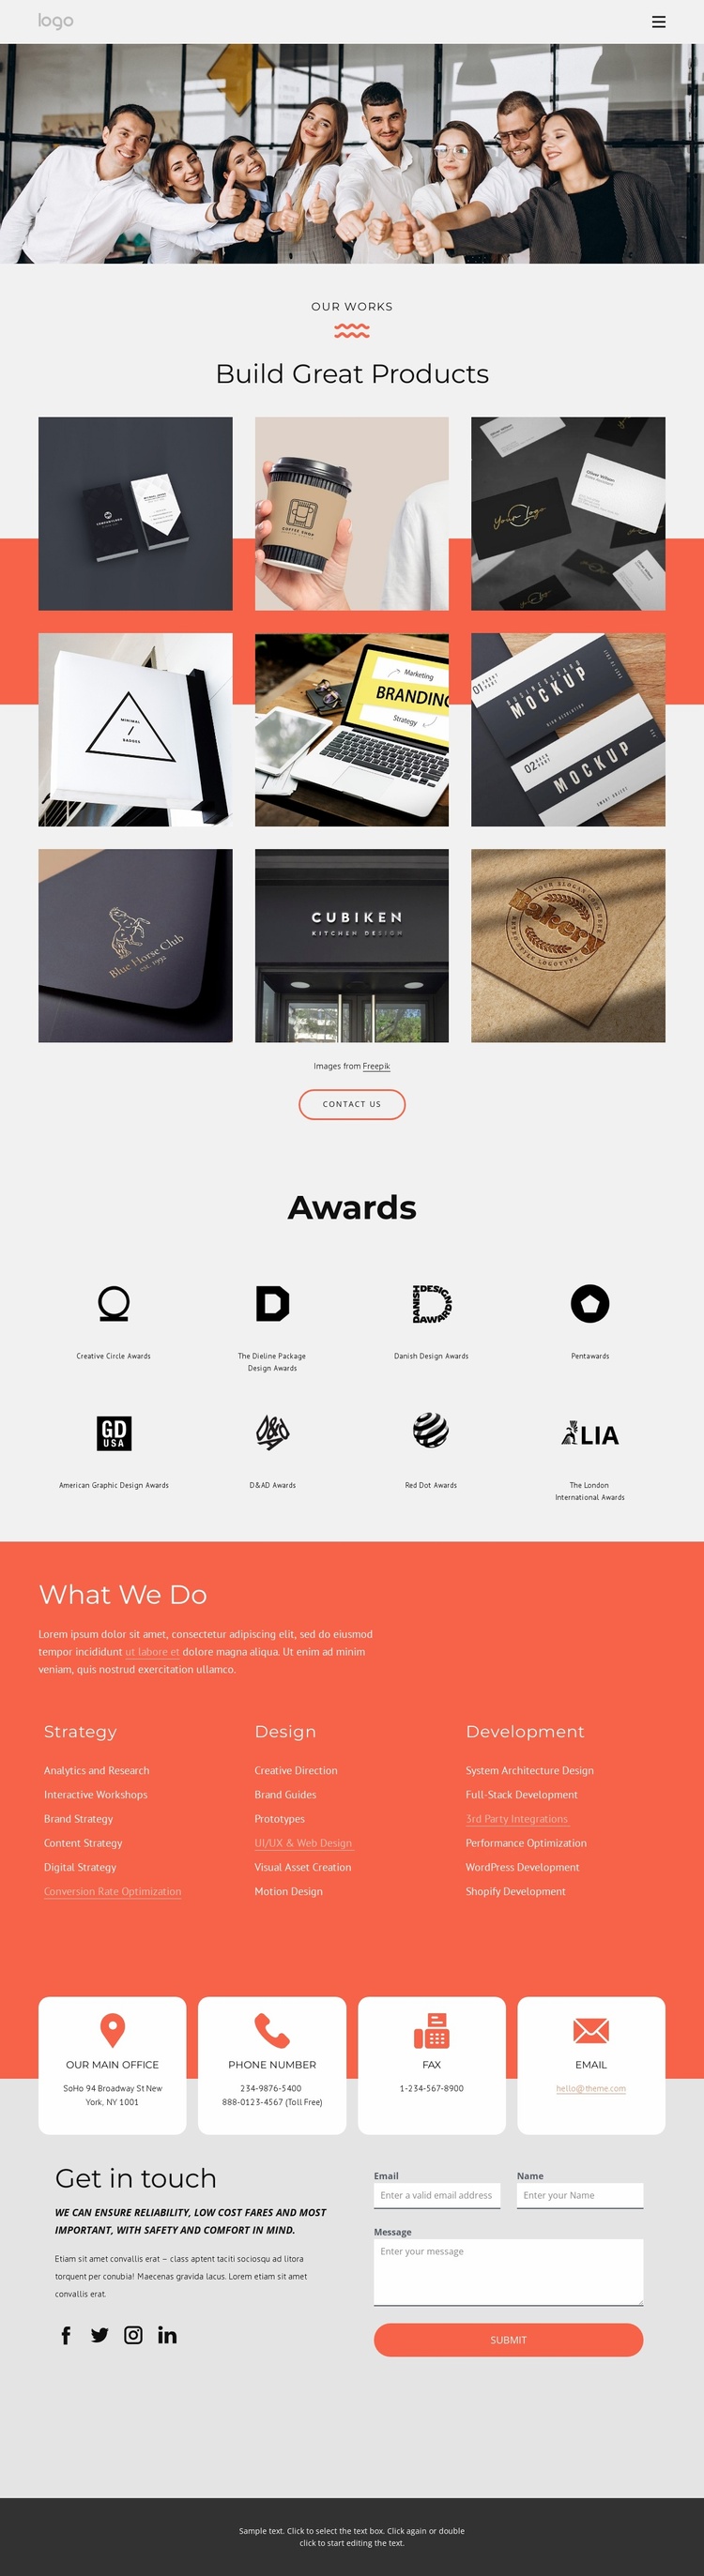 Award winning branding services Landing Page